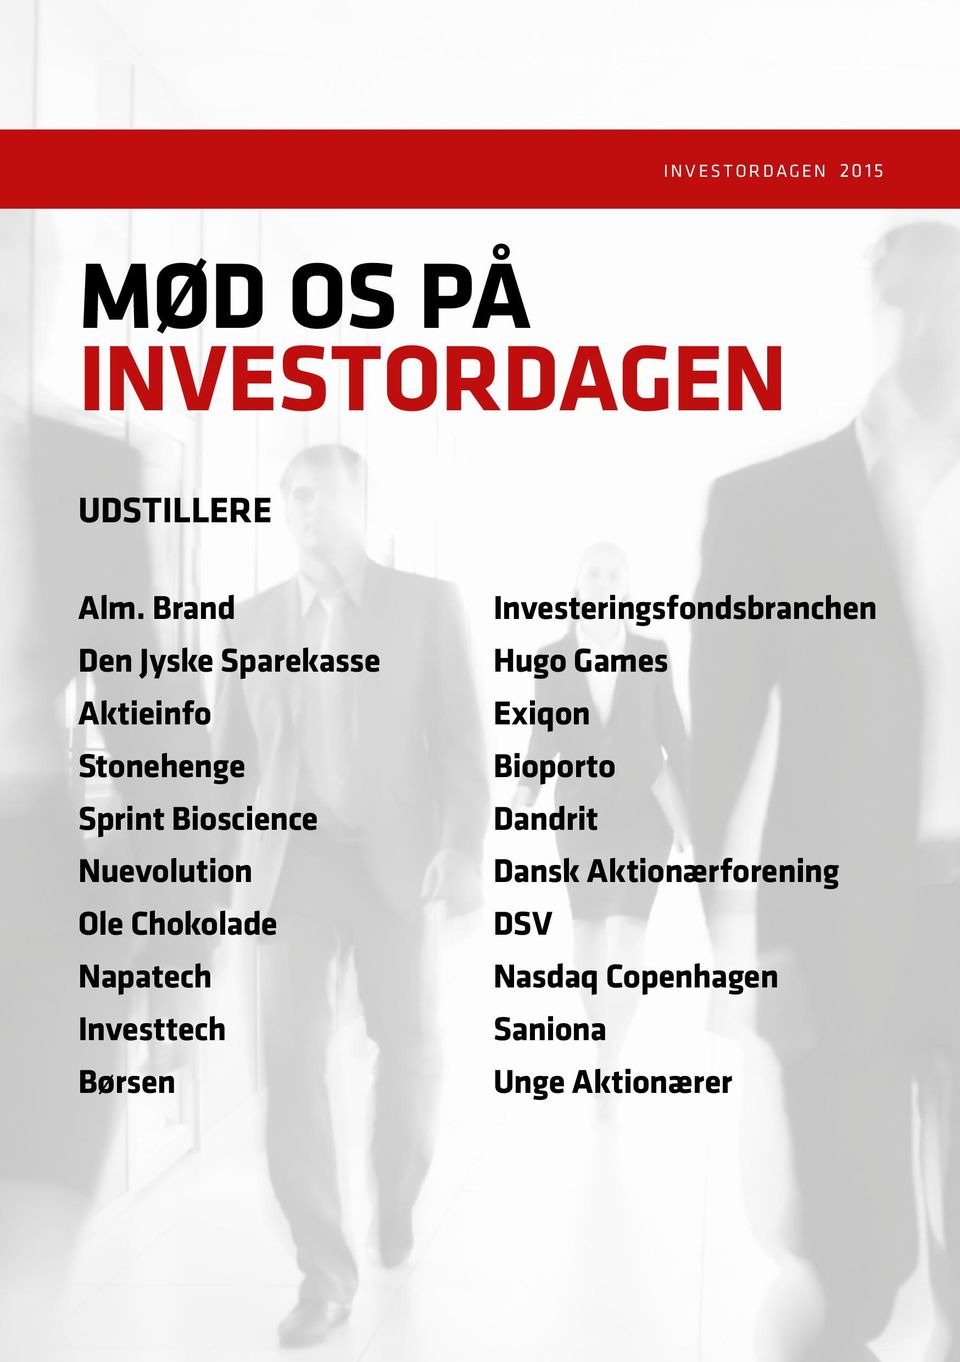 Kolding. Danmarks største for private 17. november Mediepartner. Dansk Aktionærforening. investordagen.dk shareholders. - Free Download